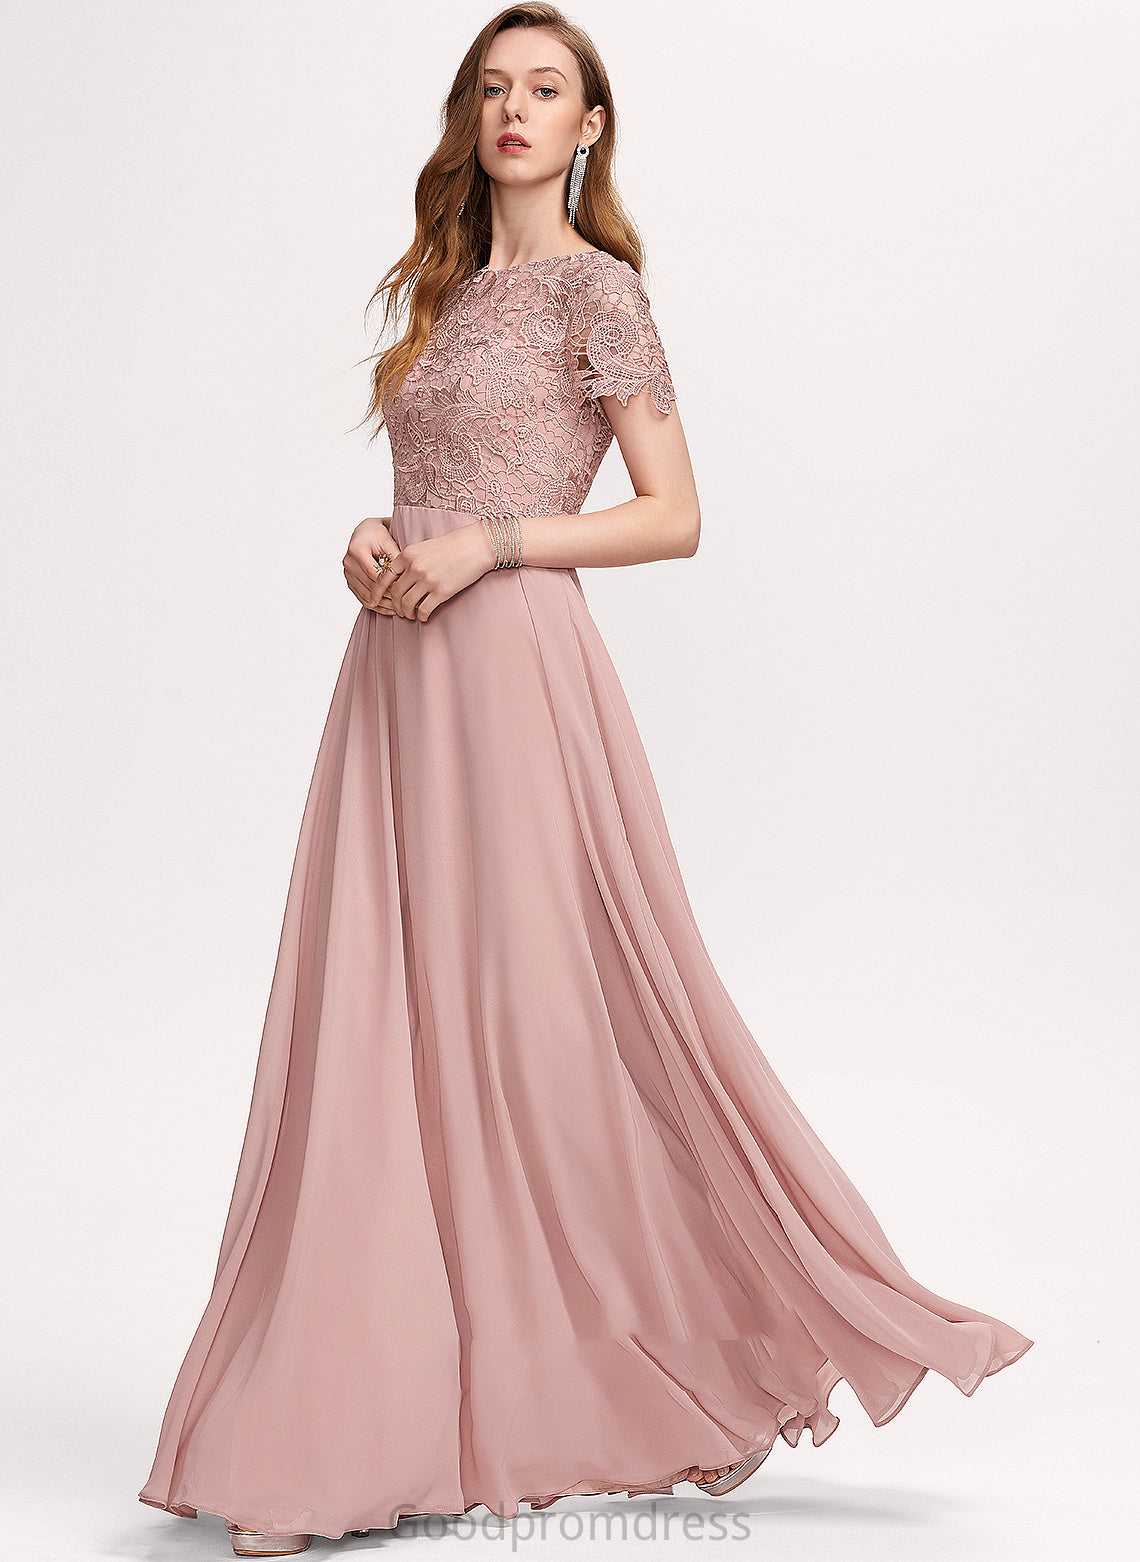 Embellishment Silhouette Fabric Neckline ScoopNeck Sequins A-Line Floor-Length Length Selina A-Line/Princess Sleeveless Bridesmaid Dresses